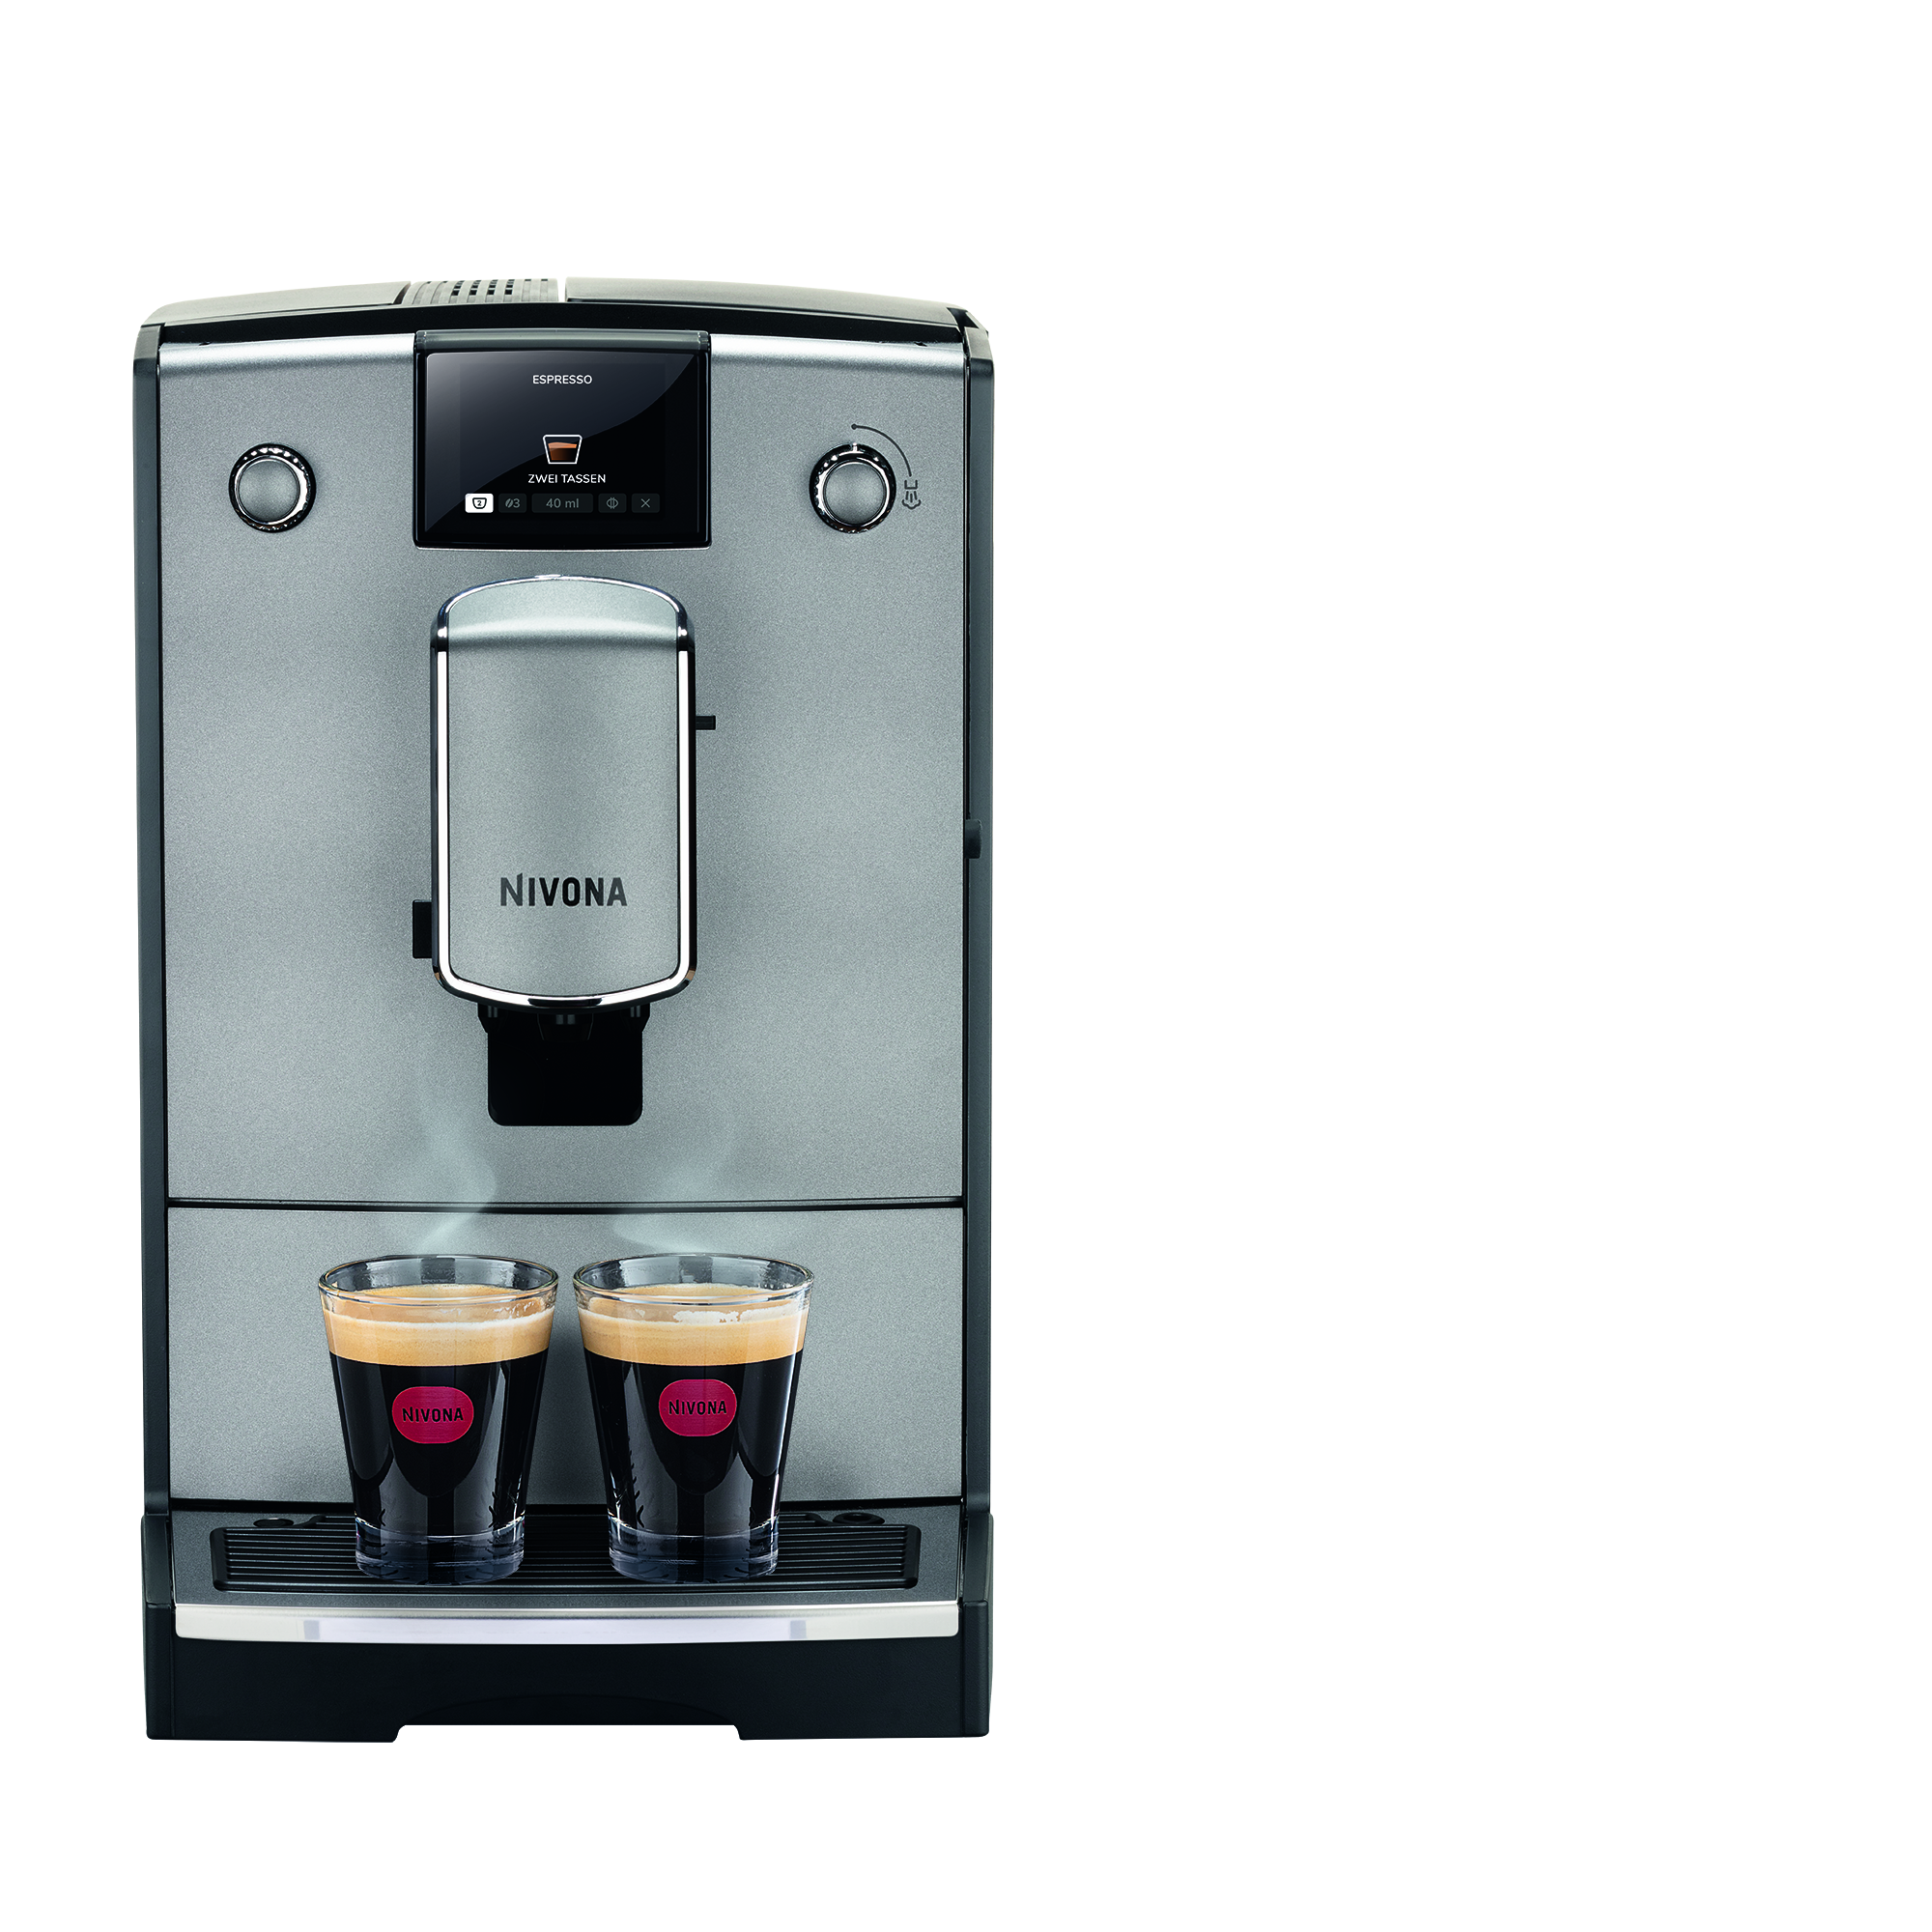 groei knijpen agentschap NIVONA CafeRomatica 695 koffiemachine kopen